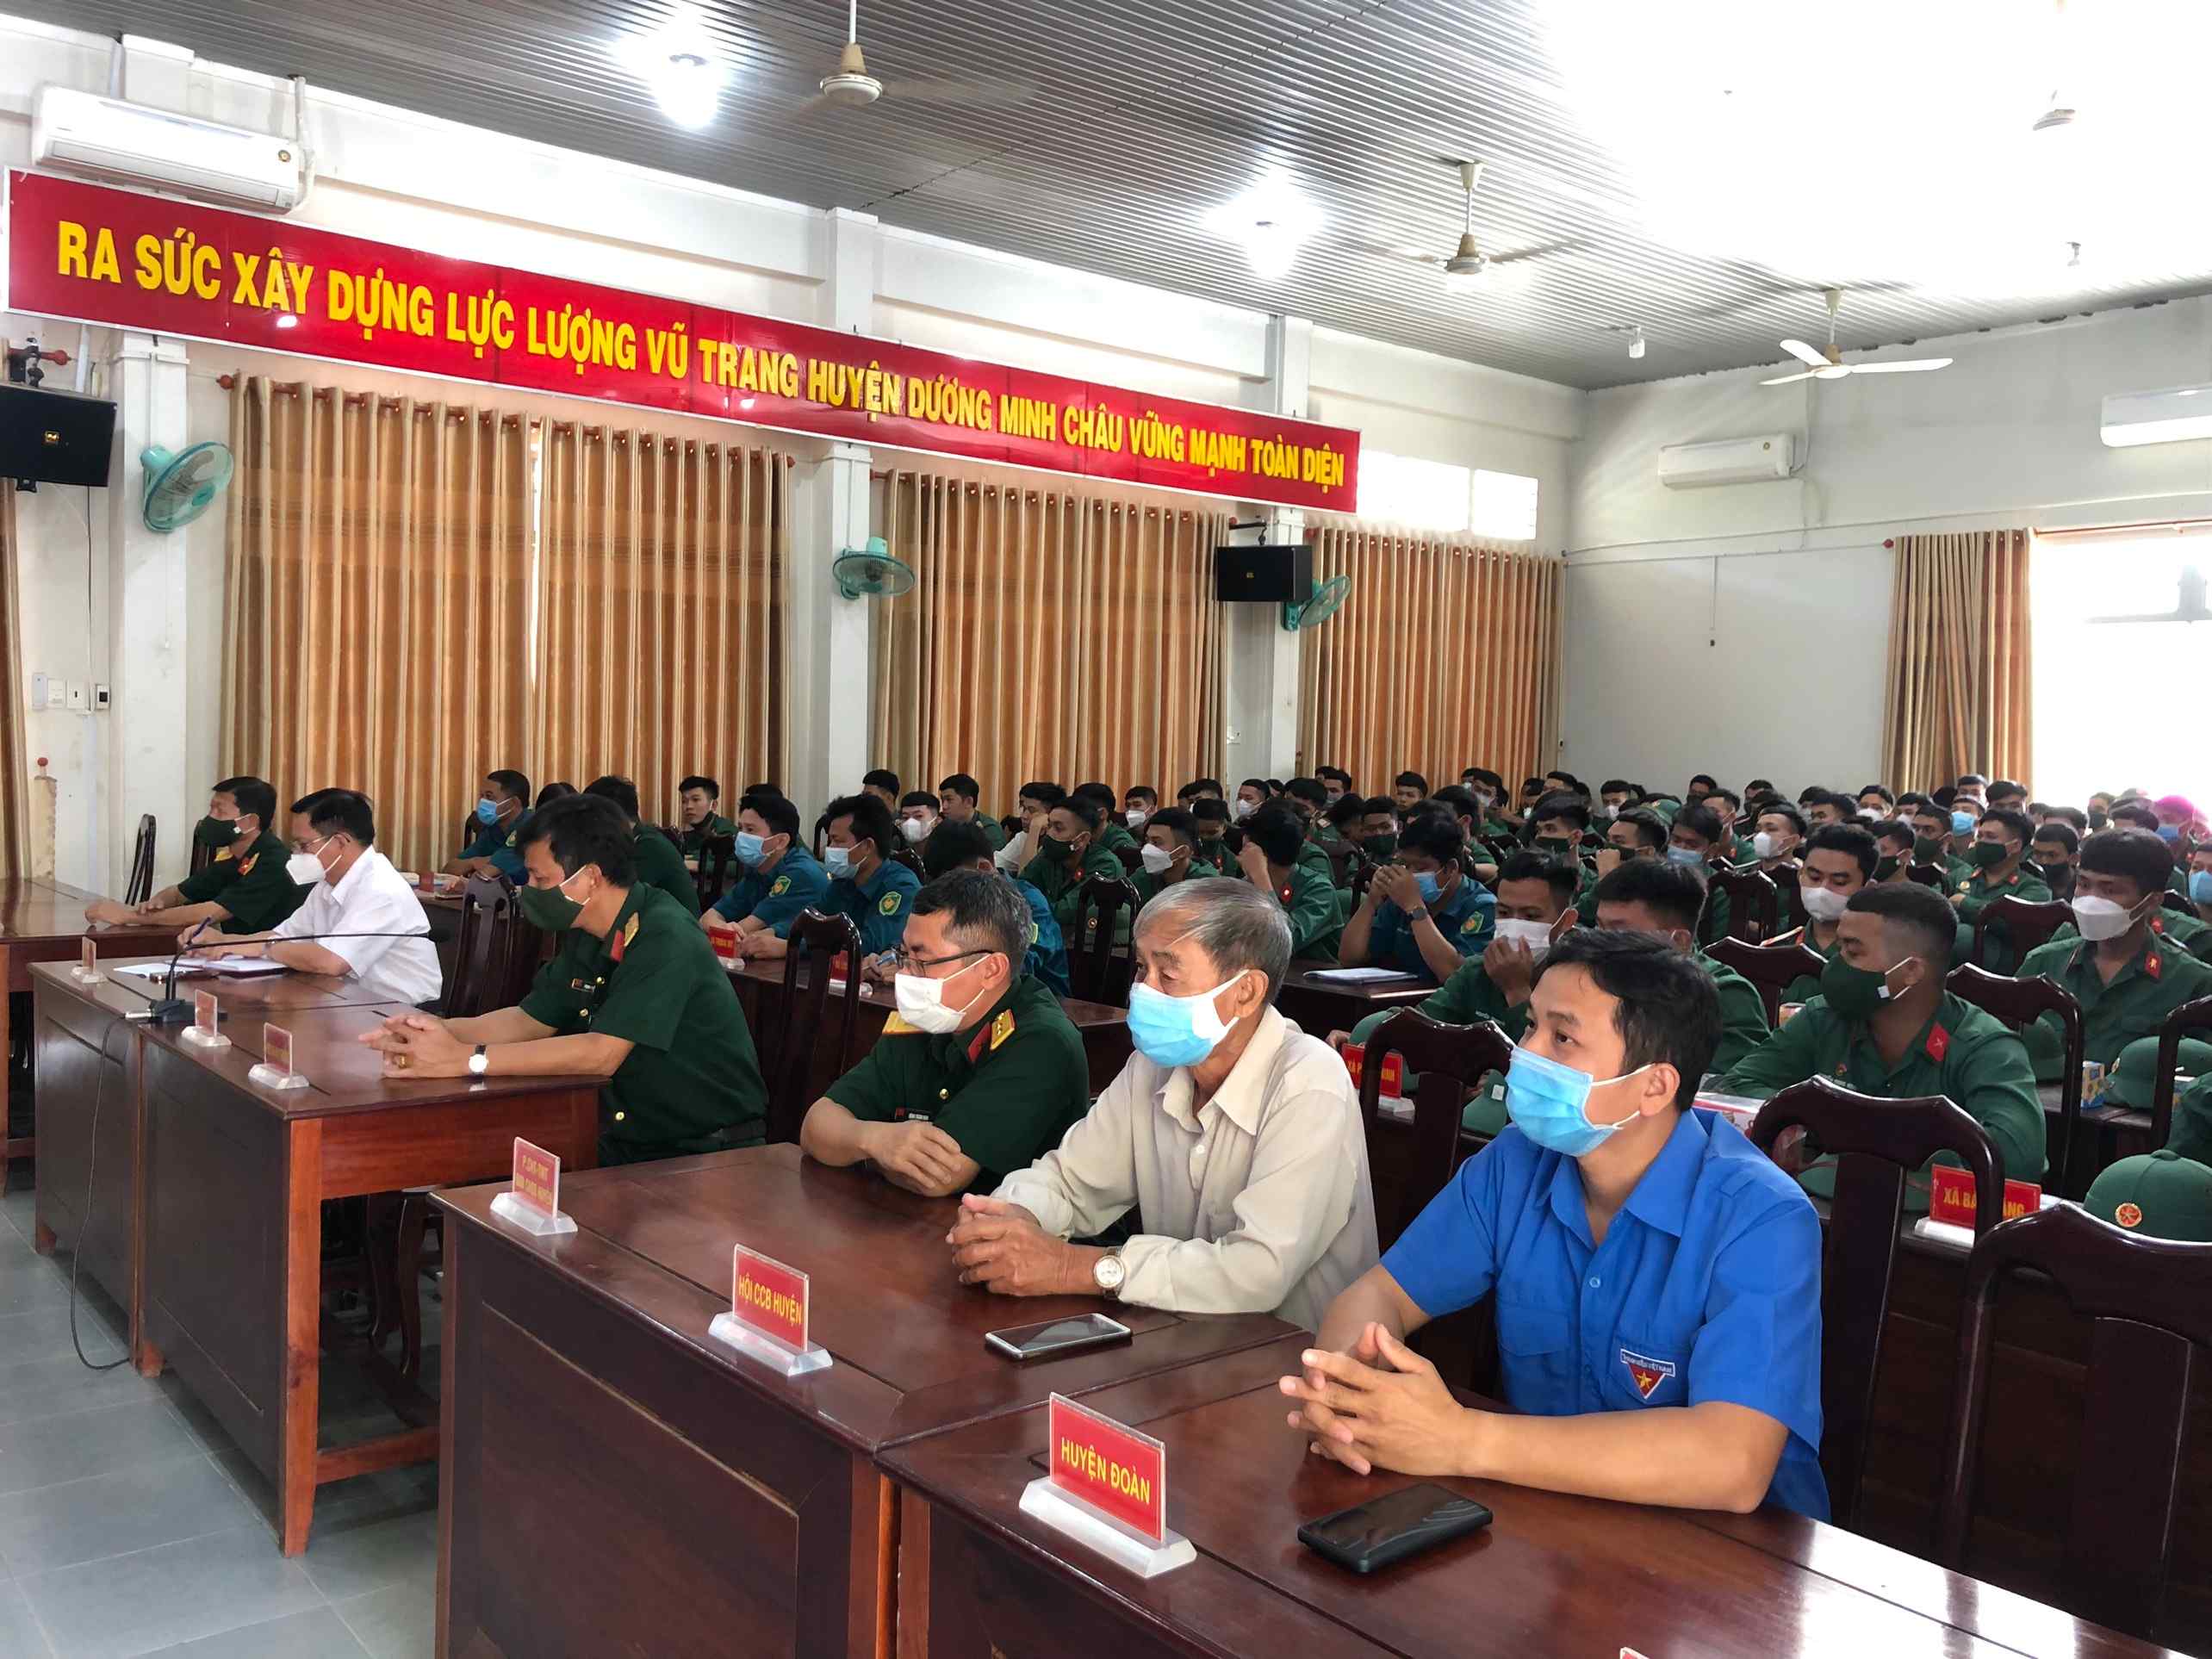 Huyện Dương Minh Châu:  Đón 138 Quân nhân hoàn thành nghĩa vụ Quân sự trở về địa phương